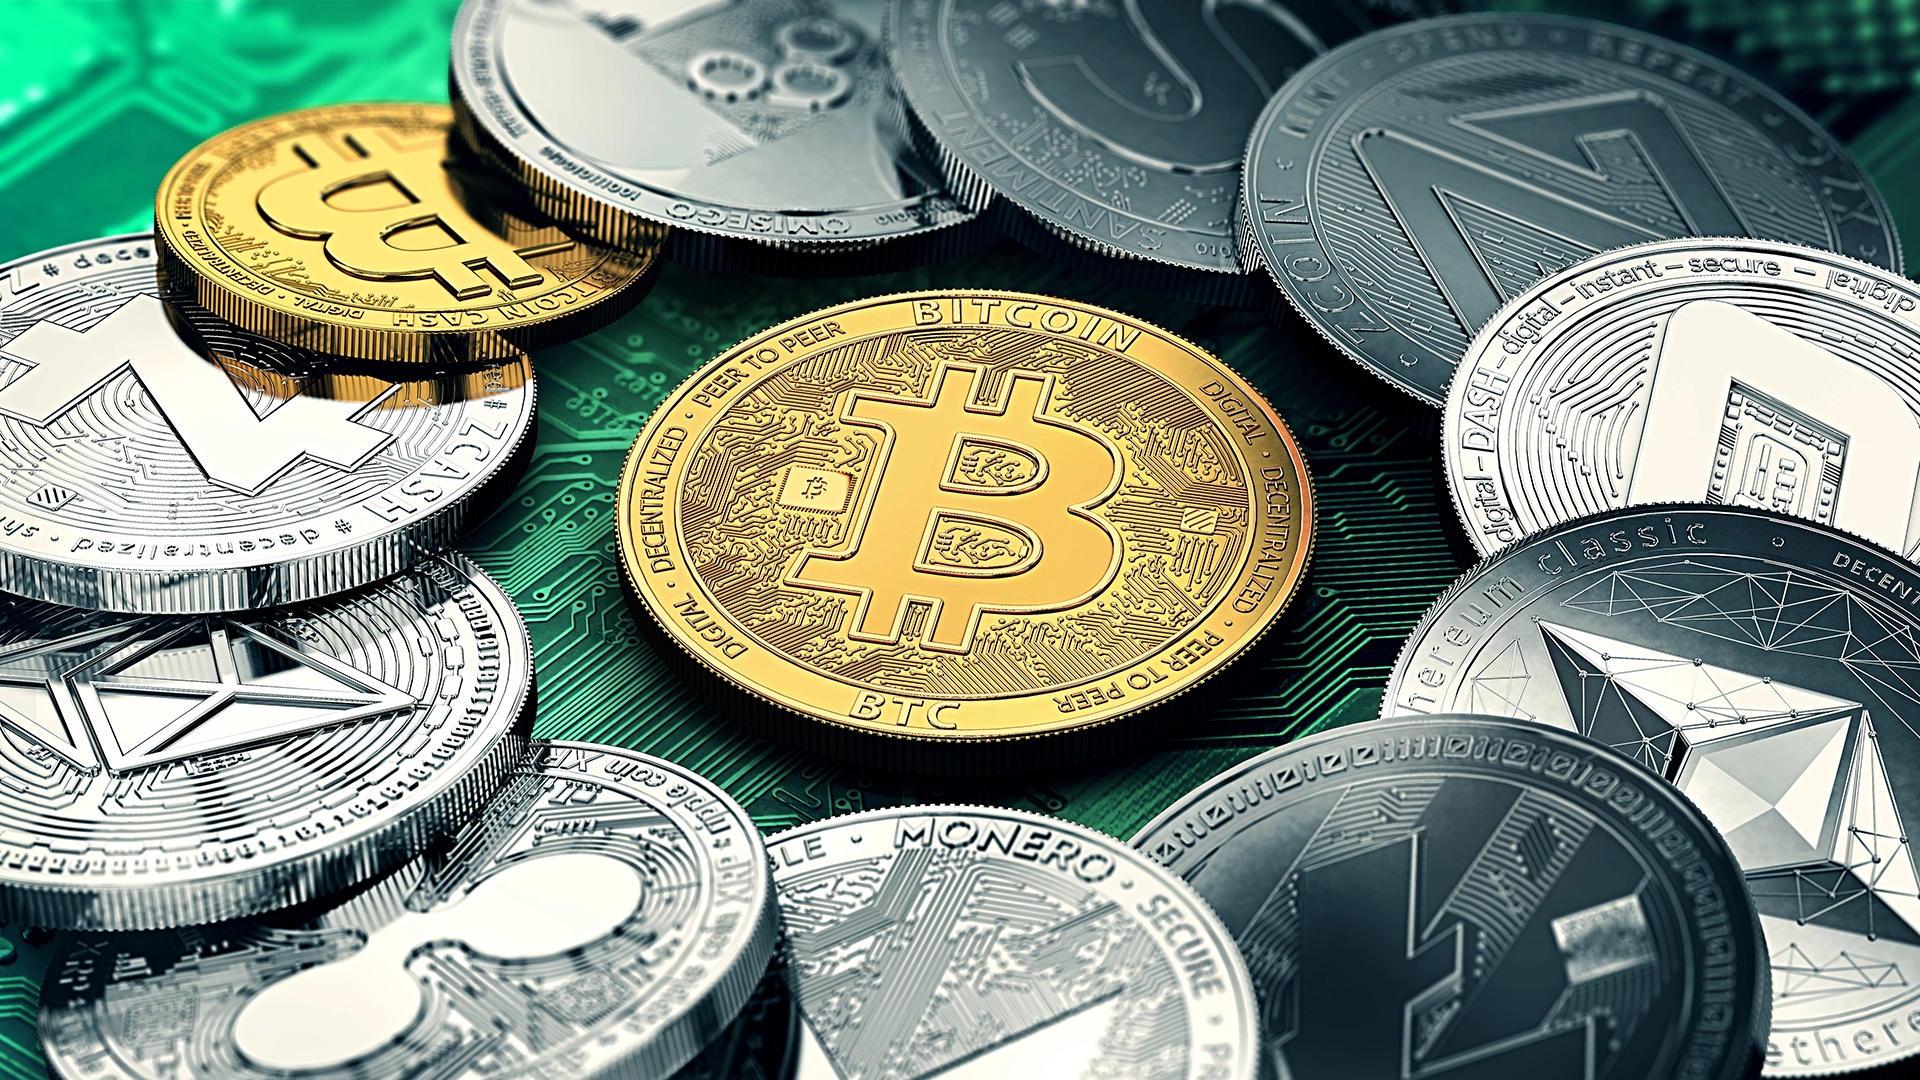 Kryptowährungen steigen stark: Warum legen Bitcoin und Ethereum zu während die Börsen fallen? (Foto: Wit Olszewski/Shutterstock)